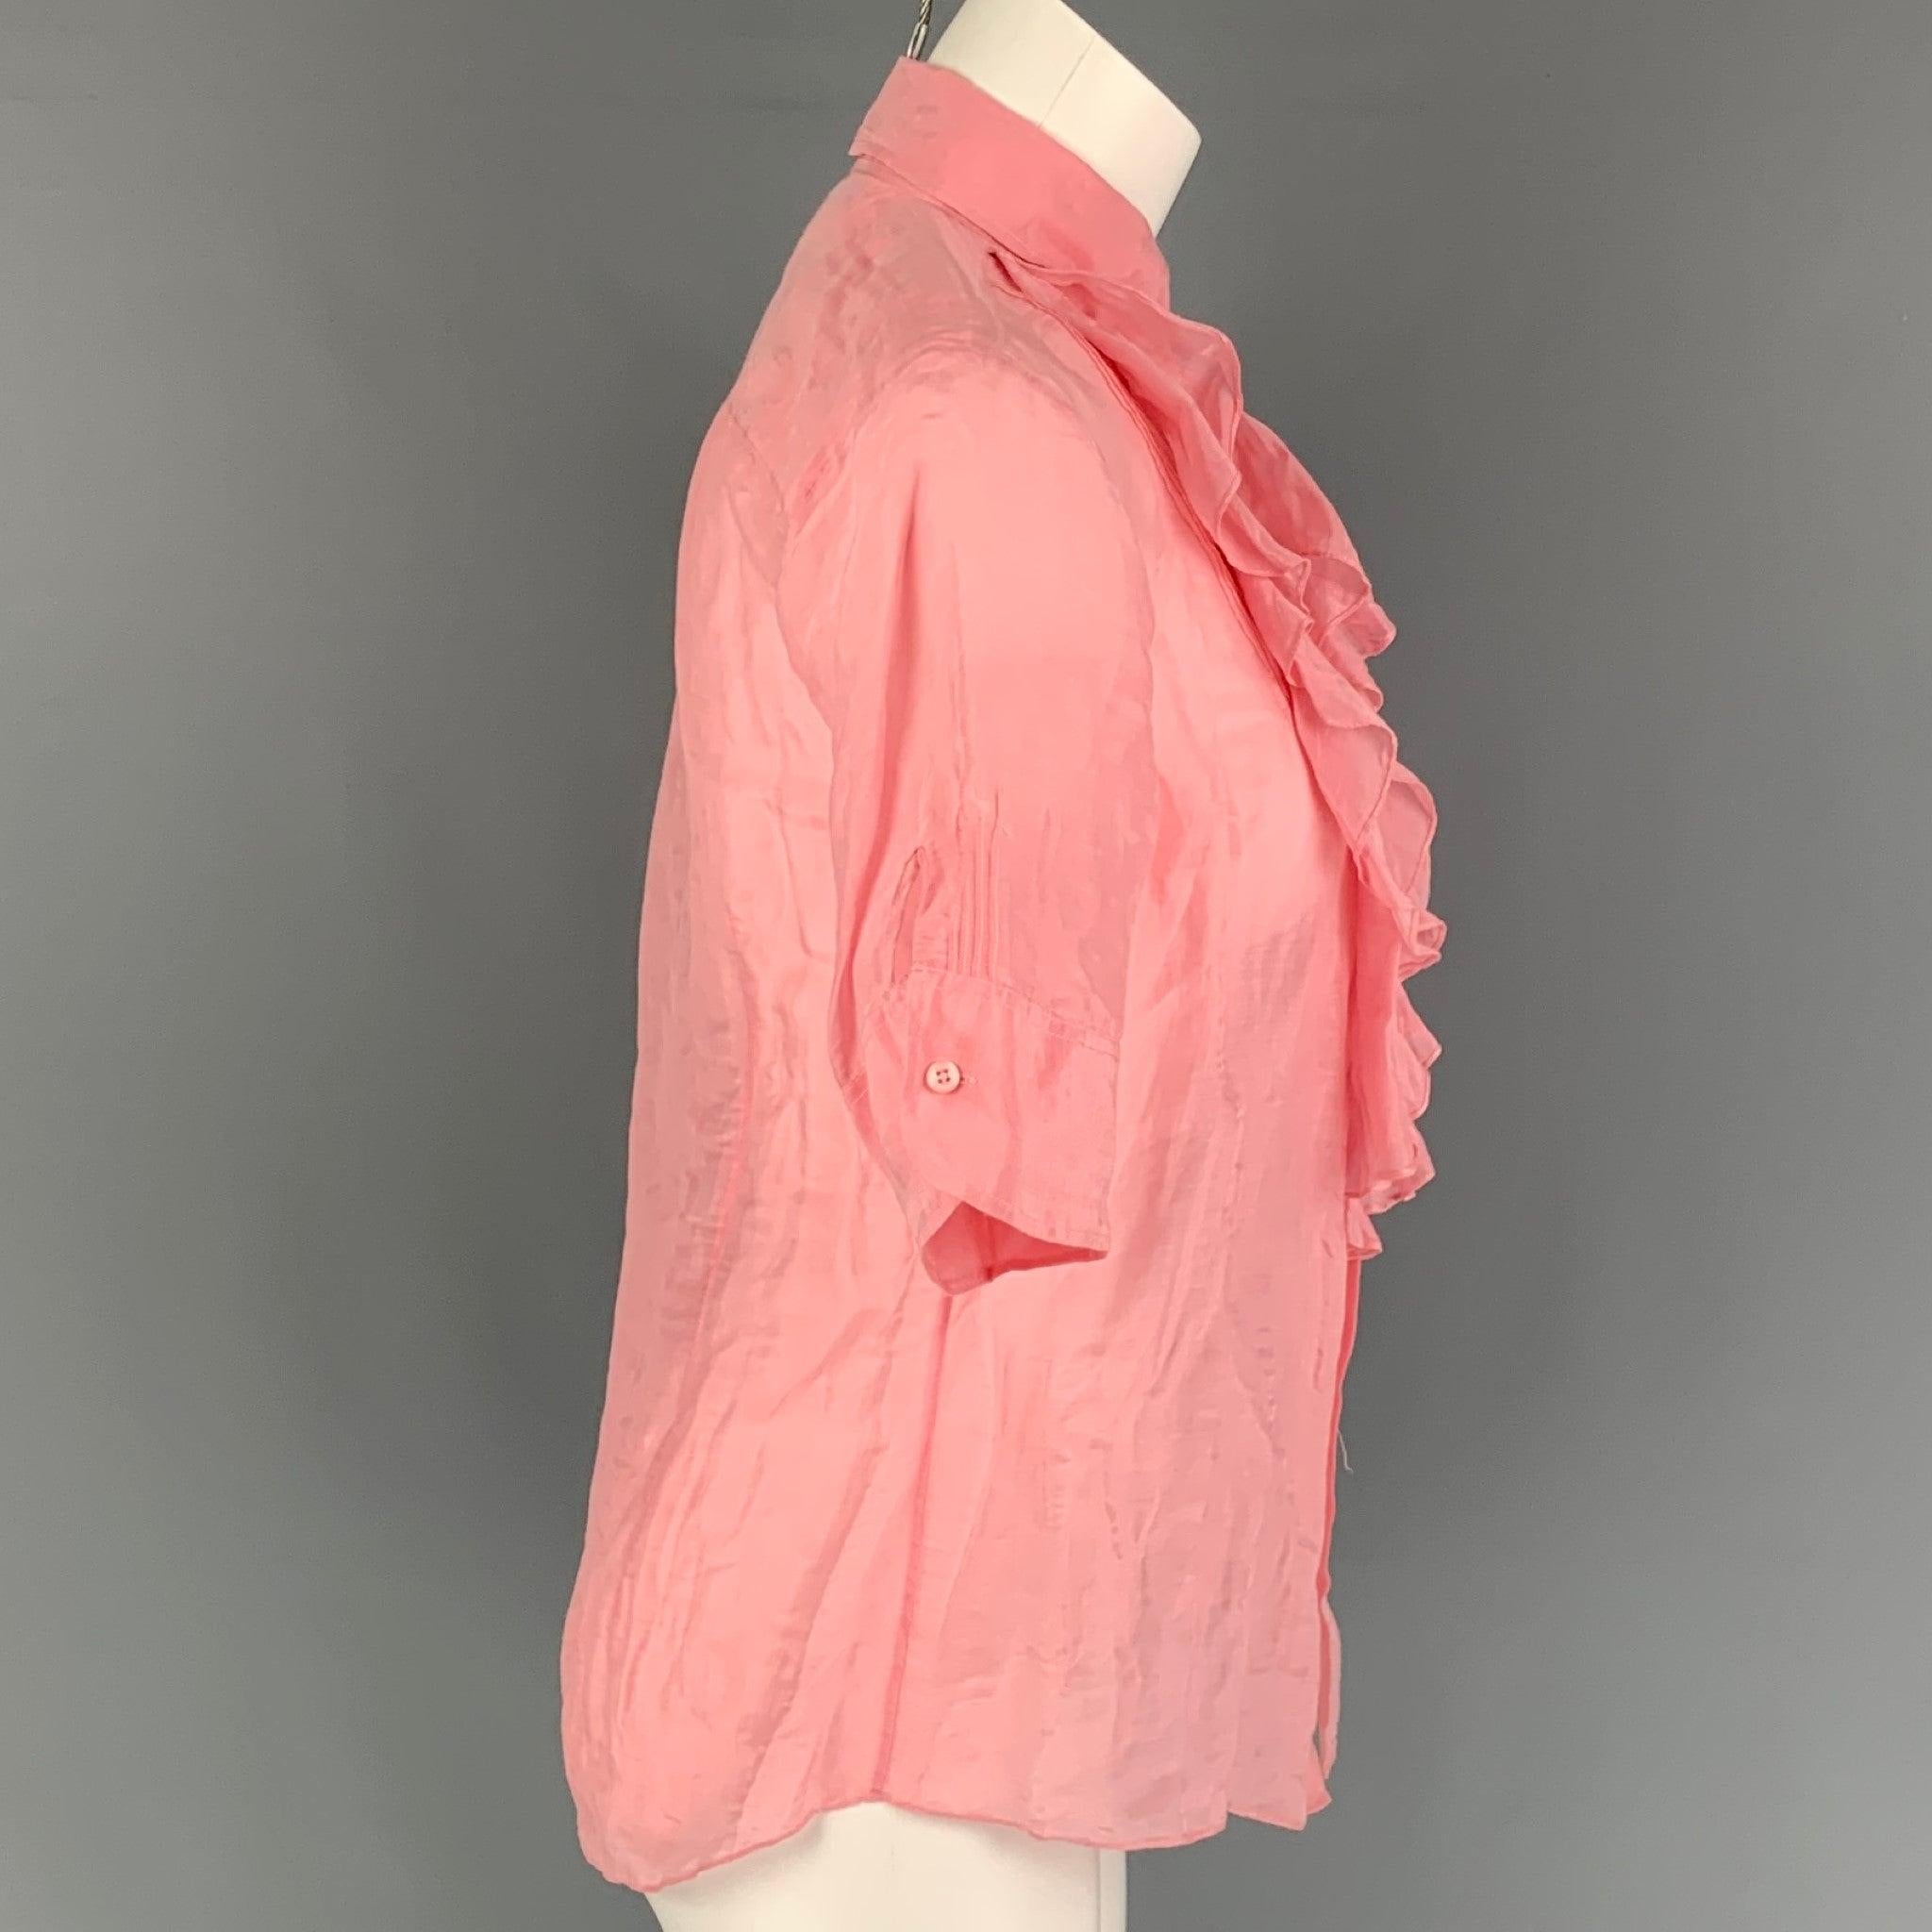 La blouse 'Black Label' de RALPH LAUREN est réalisée dans une matière rose et présente un motif à volants sur le devant, un col montant et une fermeture à boutons.
Très bien
Etat d'occasion. 

Marqué :   8 

Mesures : 
 
Épaule : 15.5 pouces 